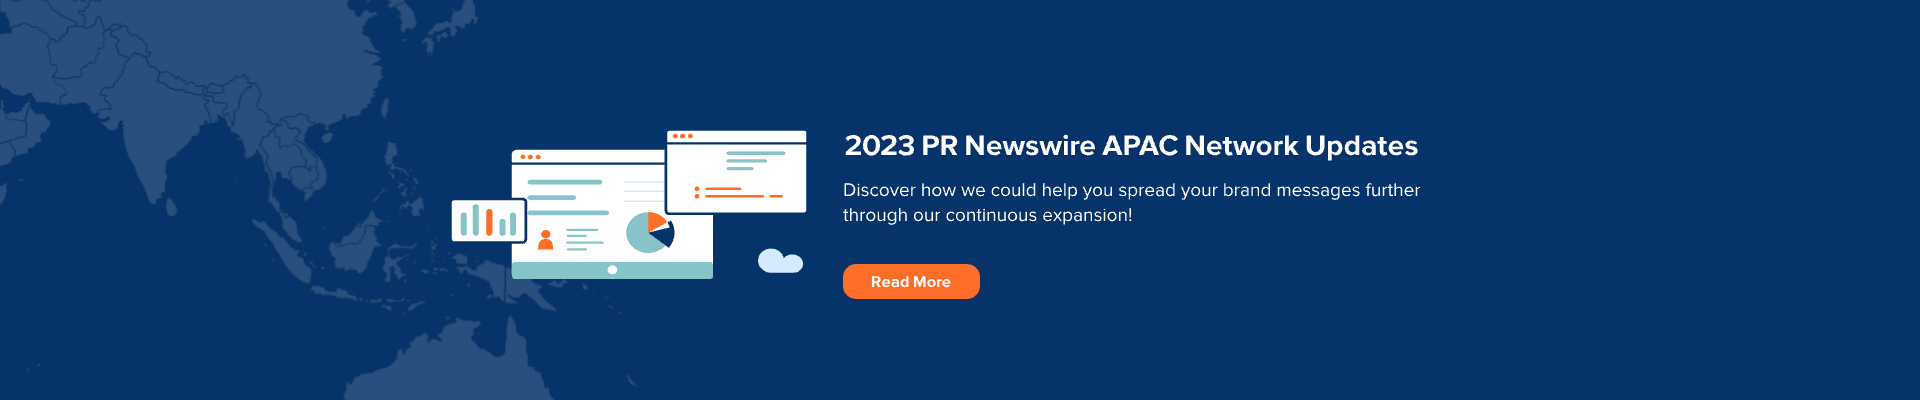 2023 PR Newswire APAC Network Updates